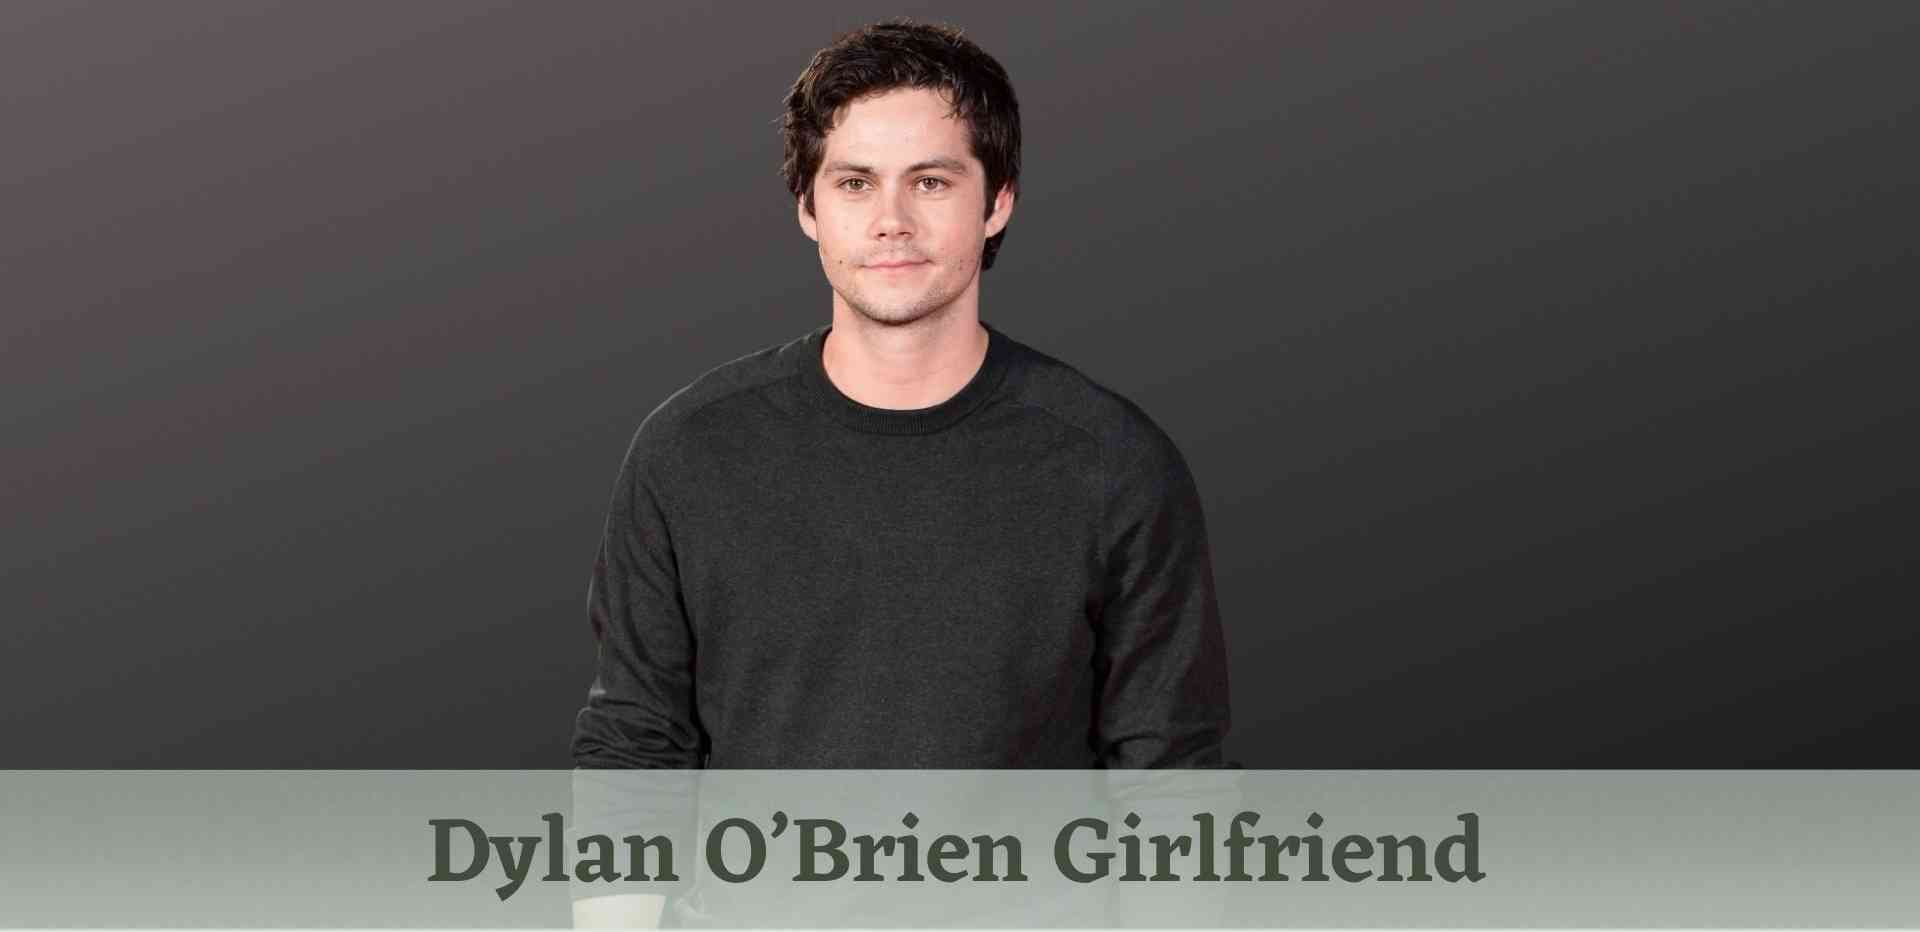 Dylan O’Brien Girlfriend